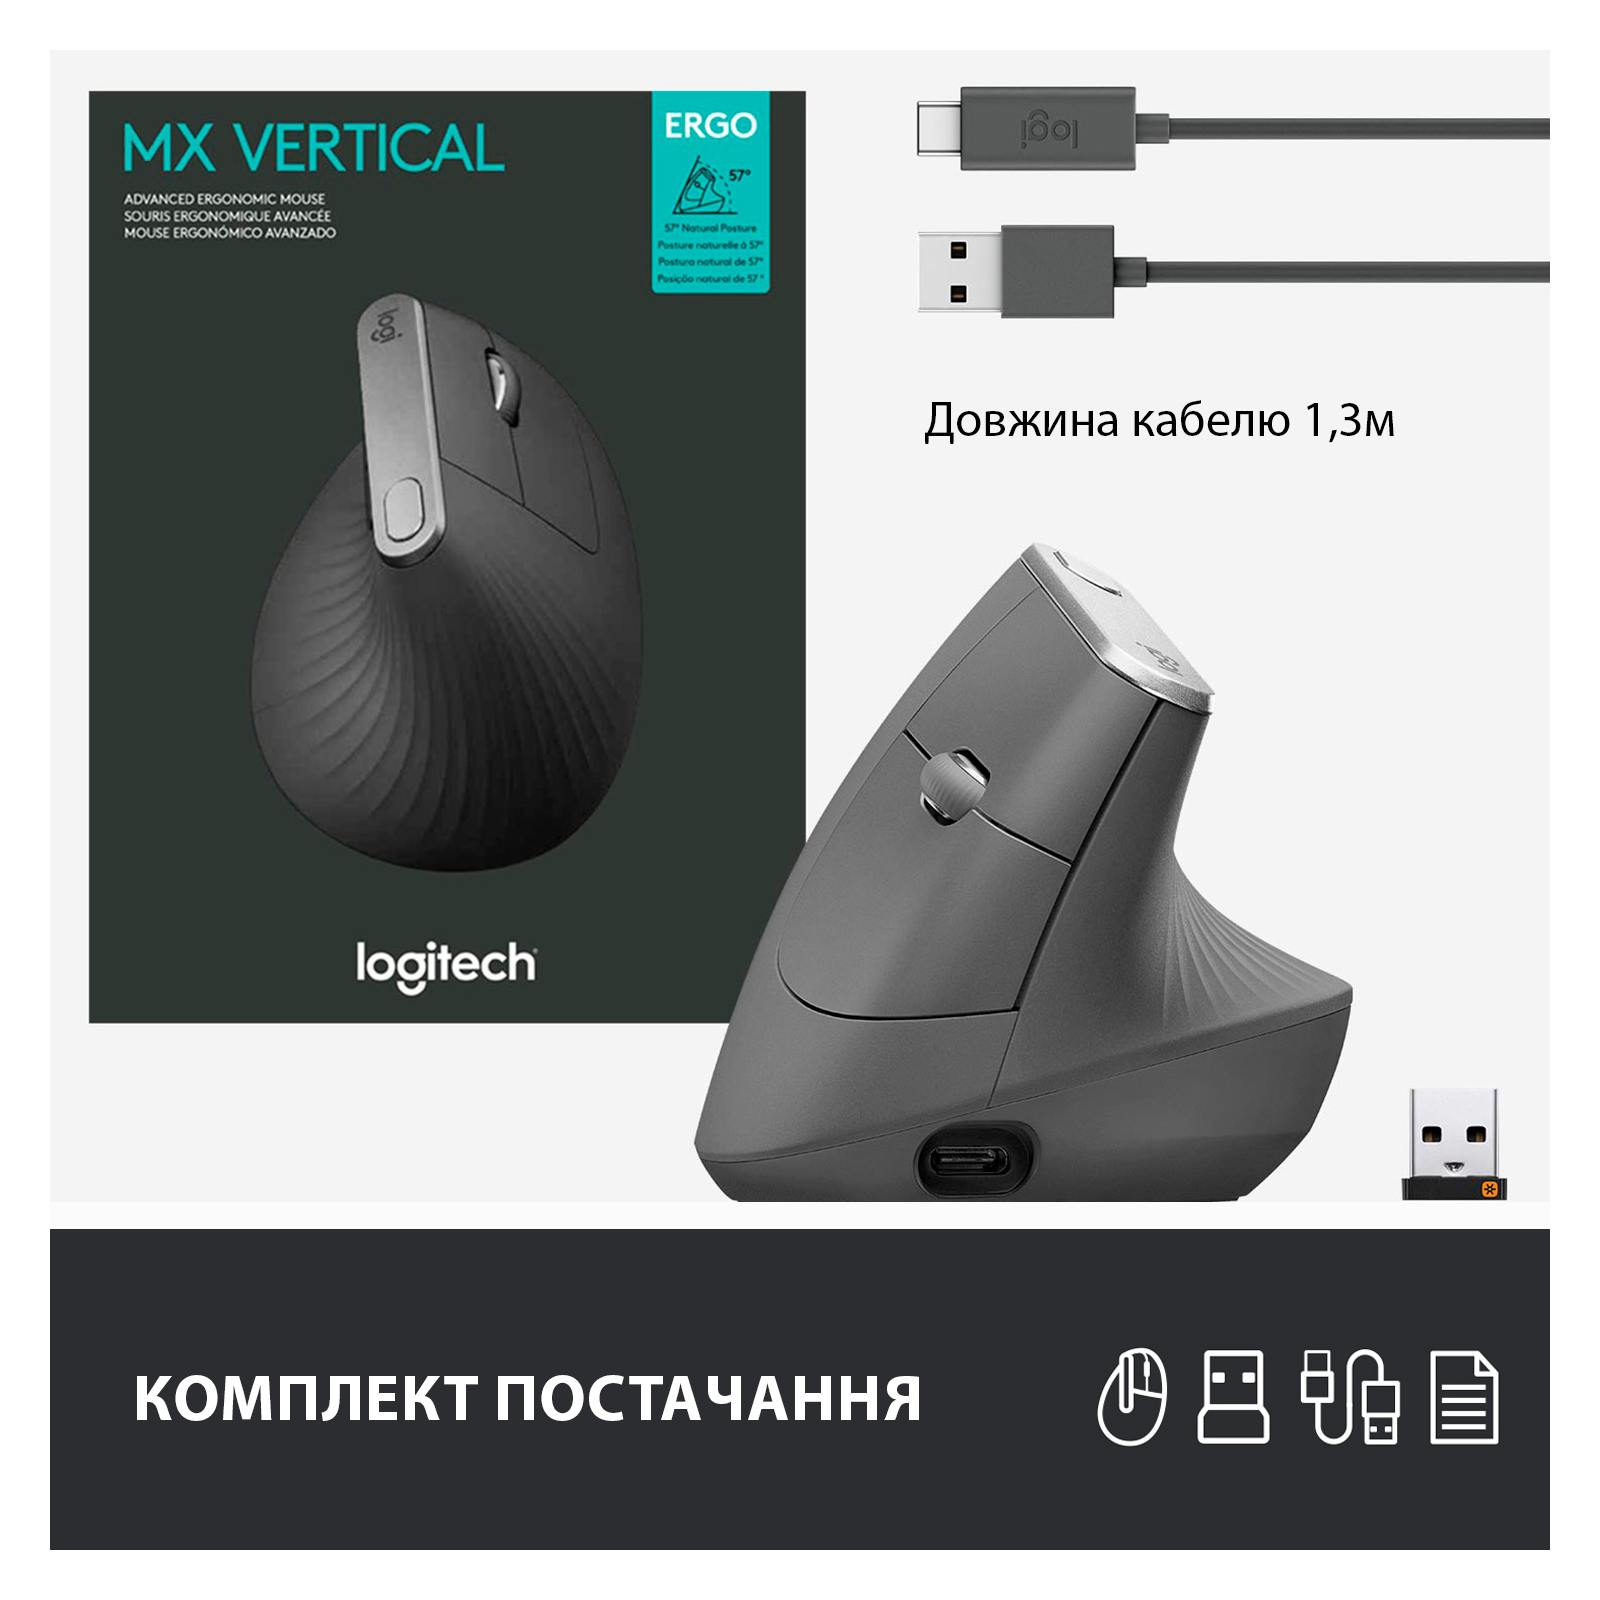 Мышка Logitech MX Vertical (910-005448) изображение 9